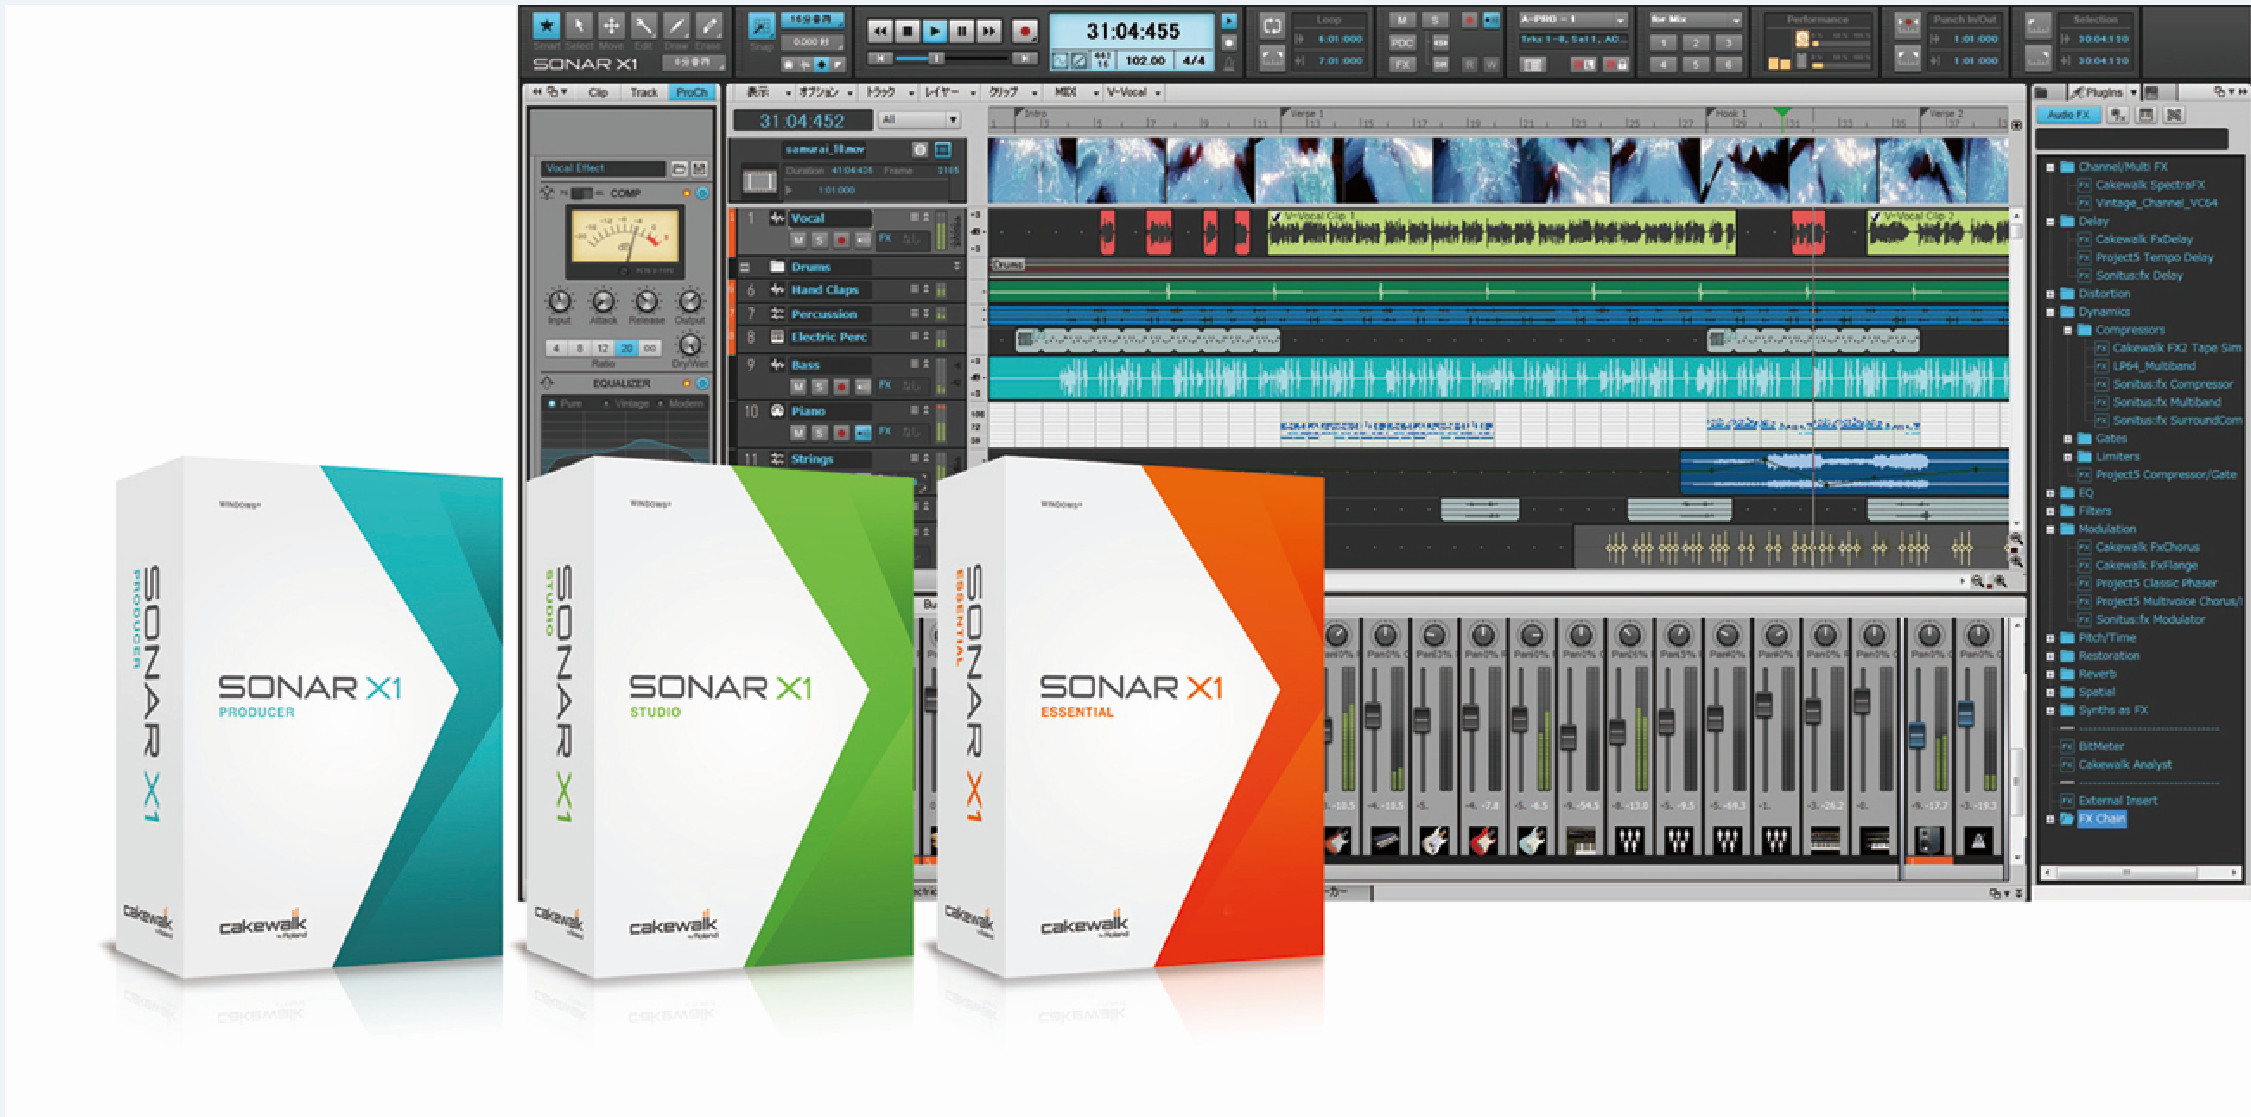 sonarX1 producer DTMソフト